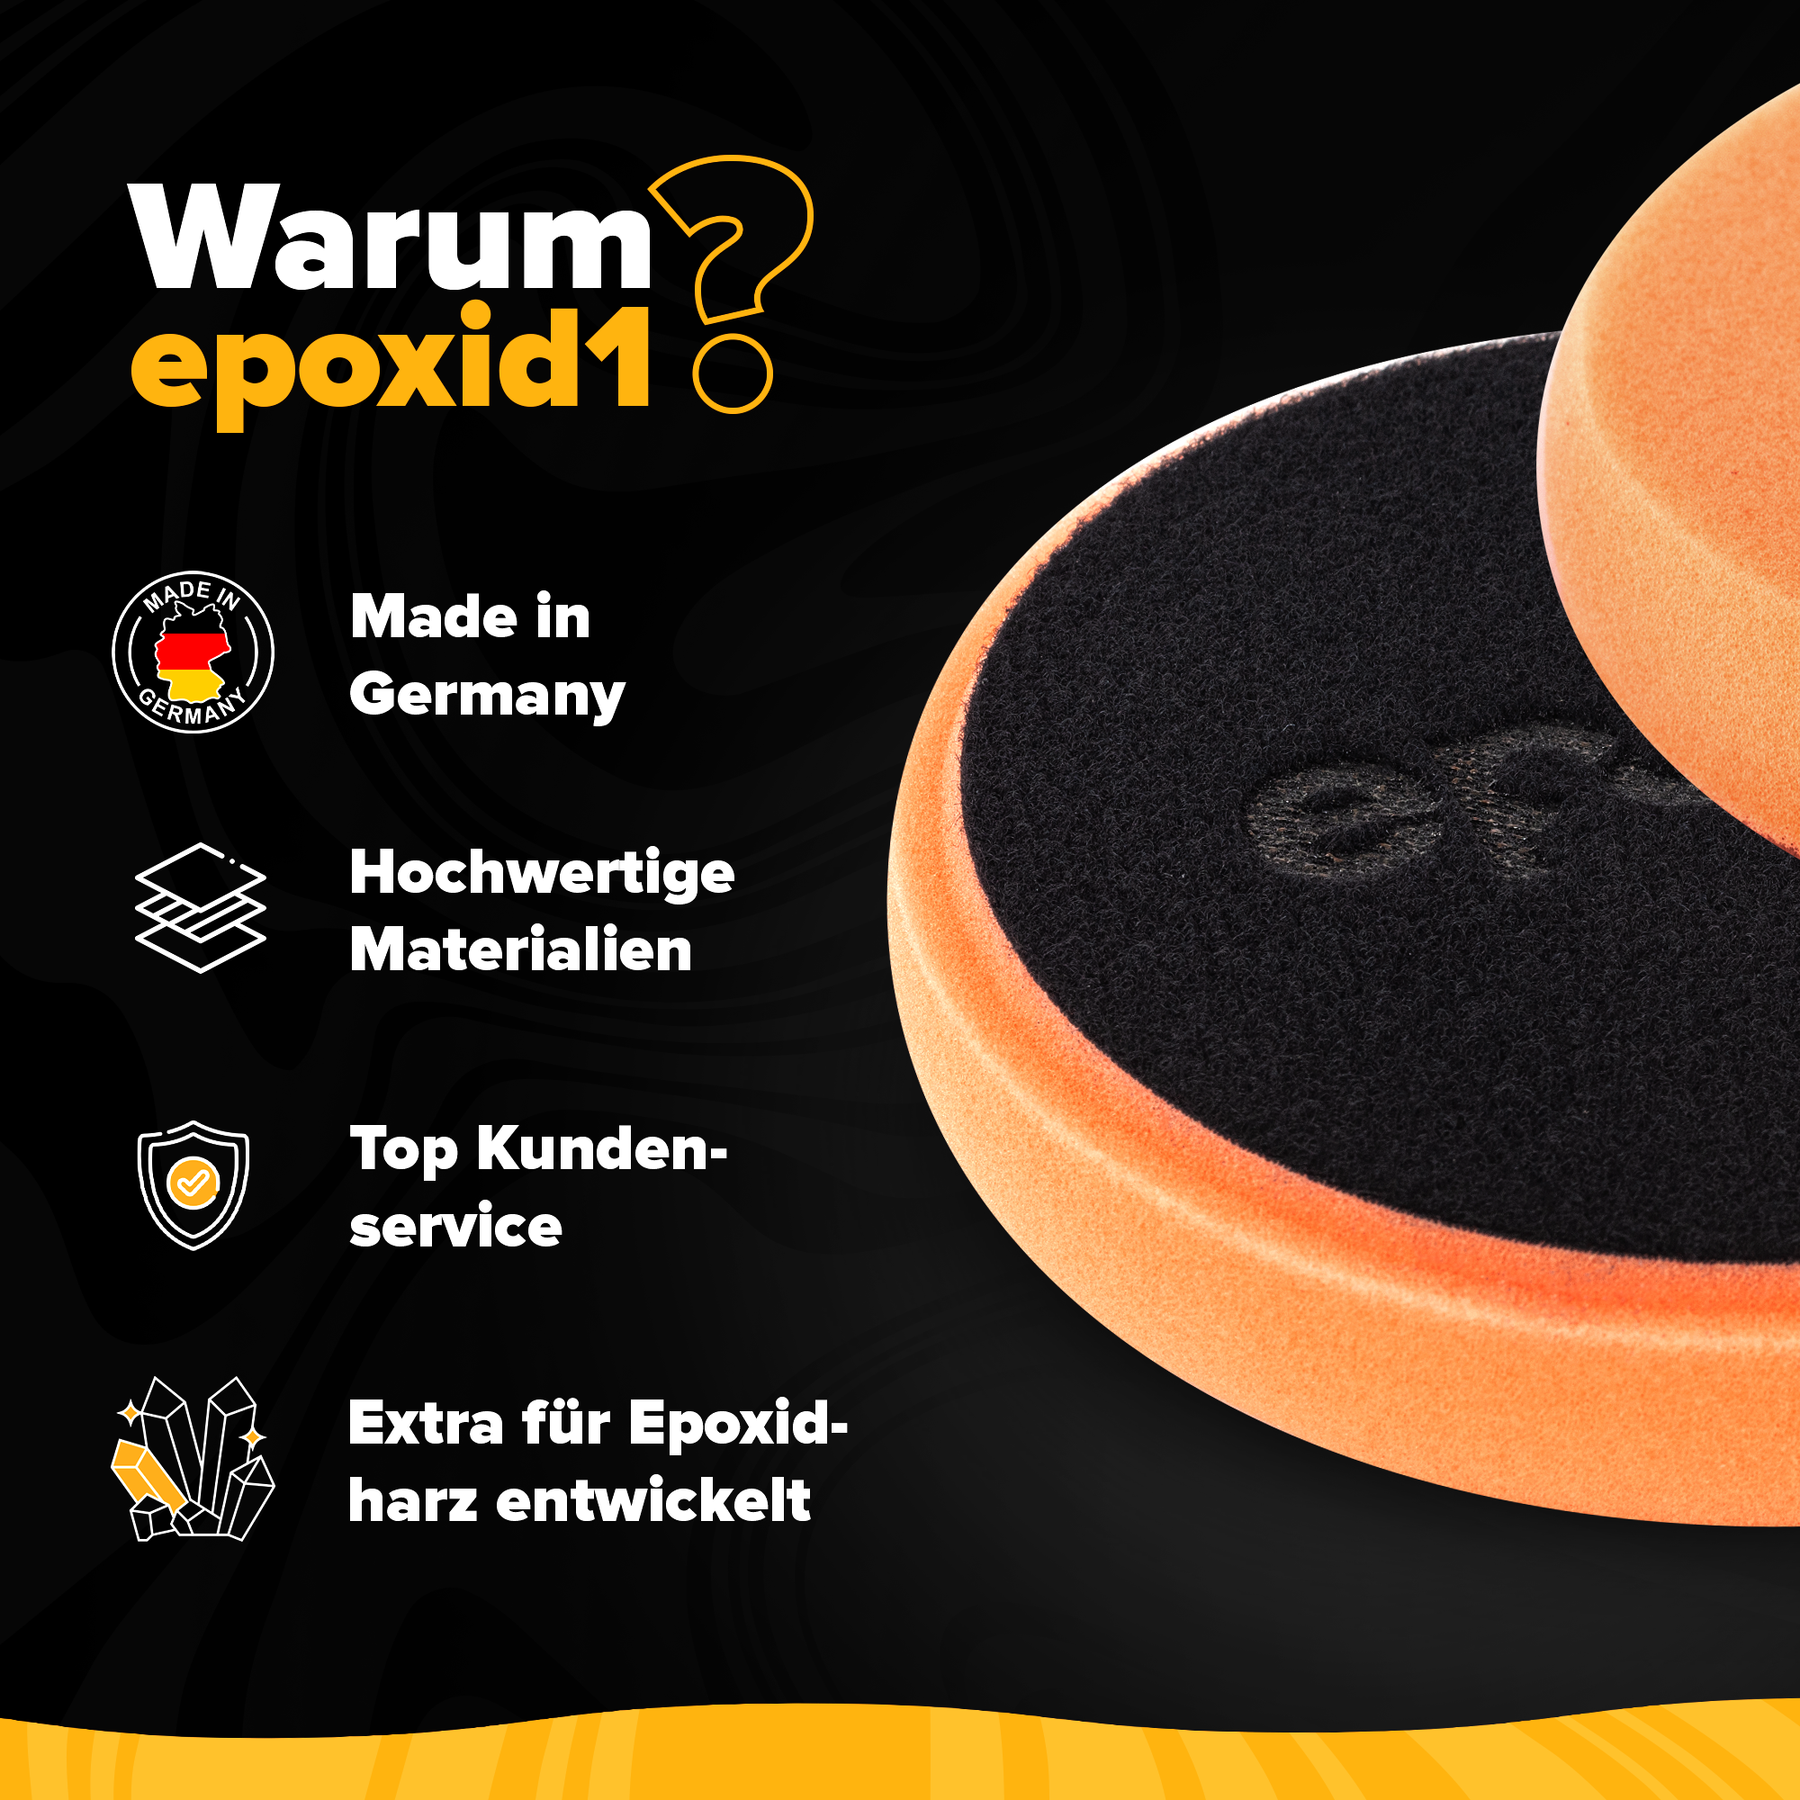 Der Polierschwamm von epoxid1 wird in Deutschland aus hochwertigen Materialien hergestellt